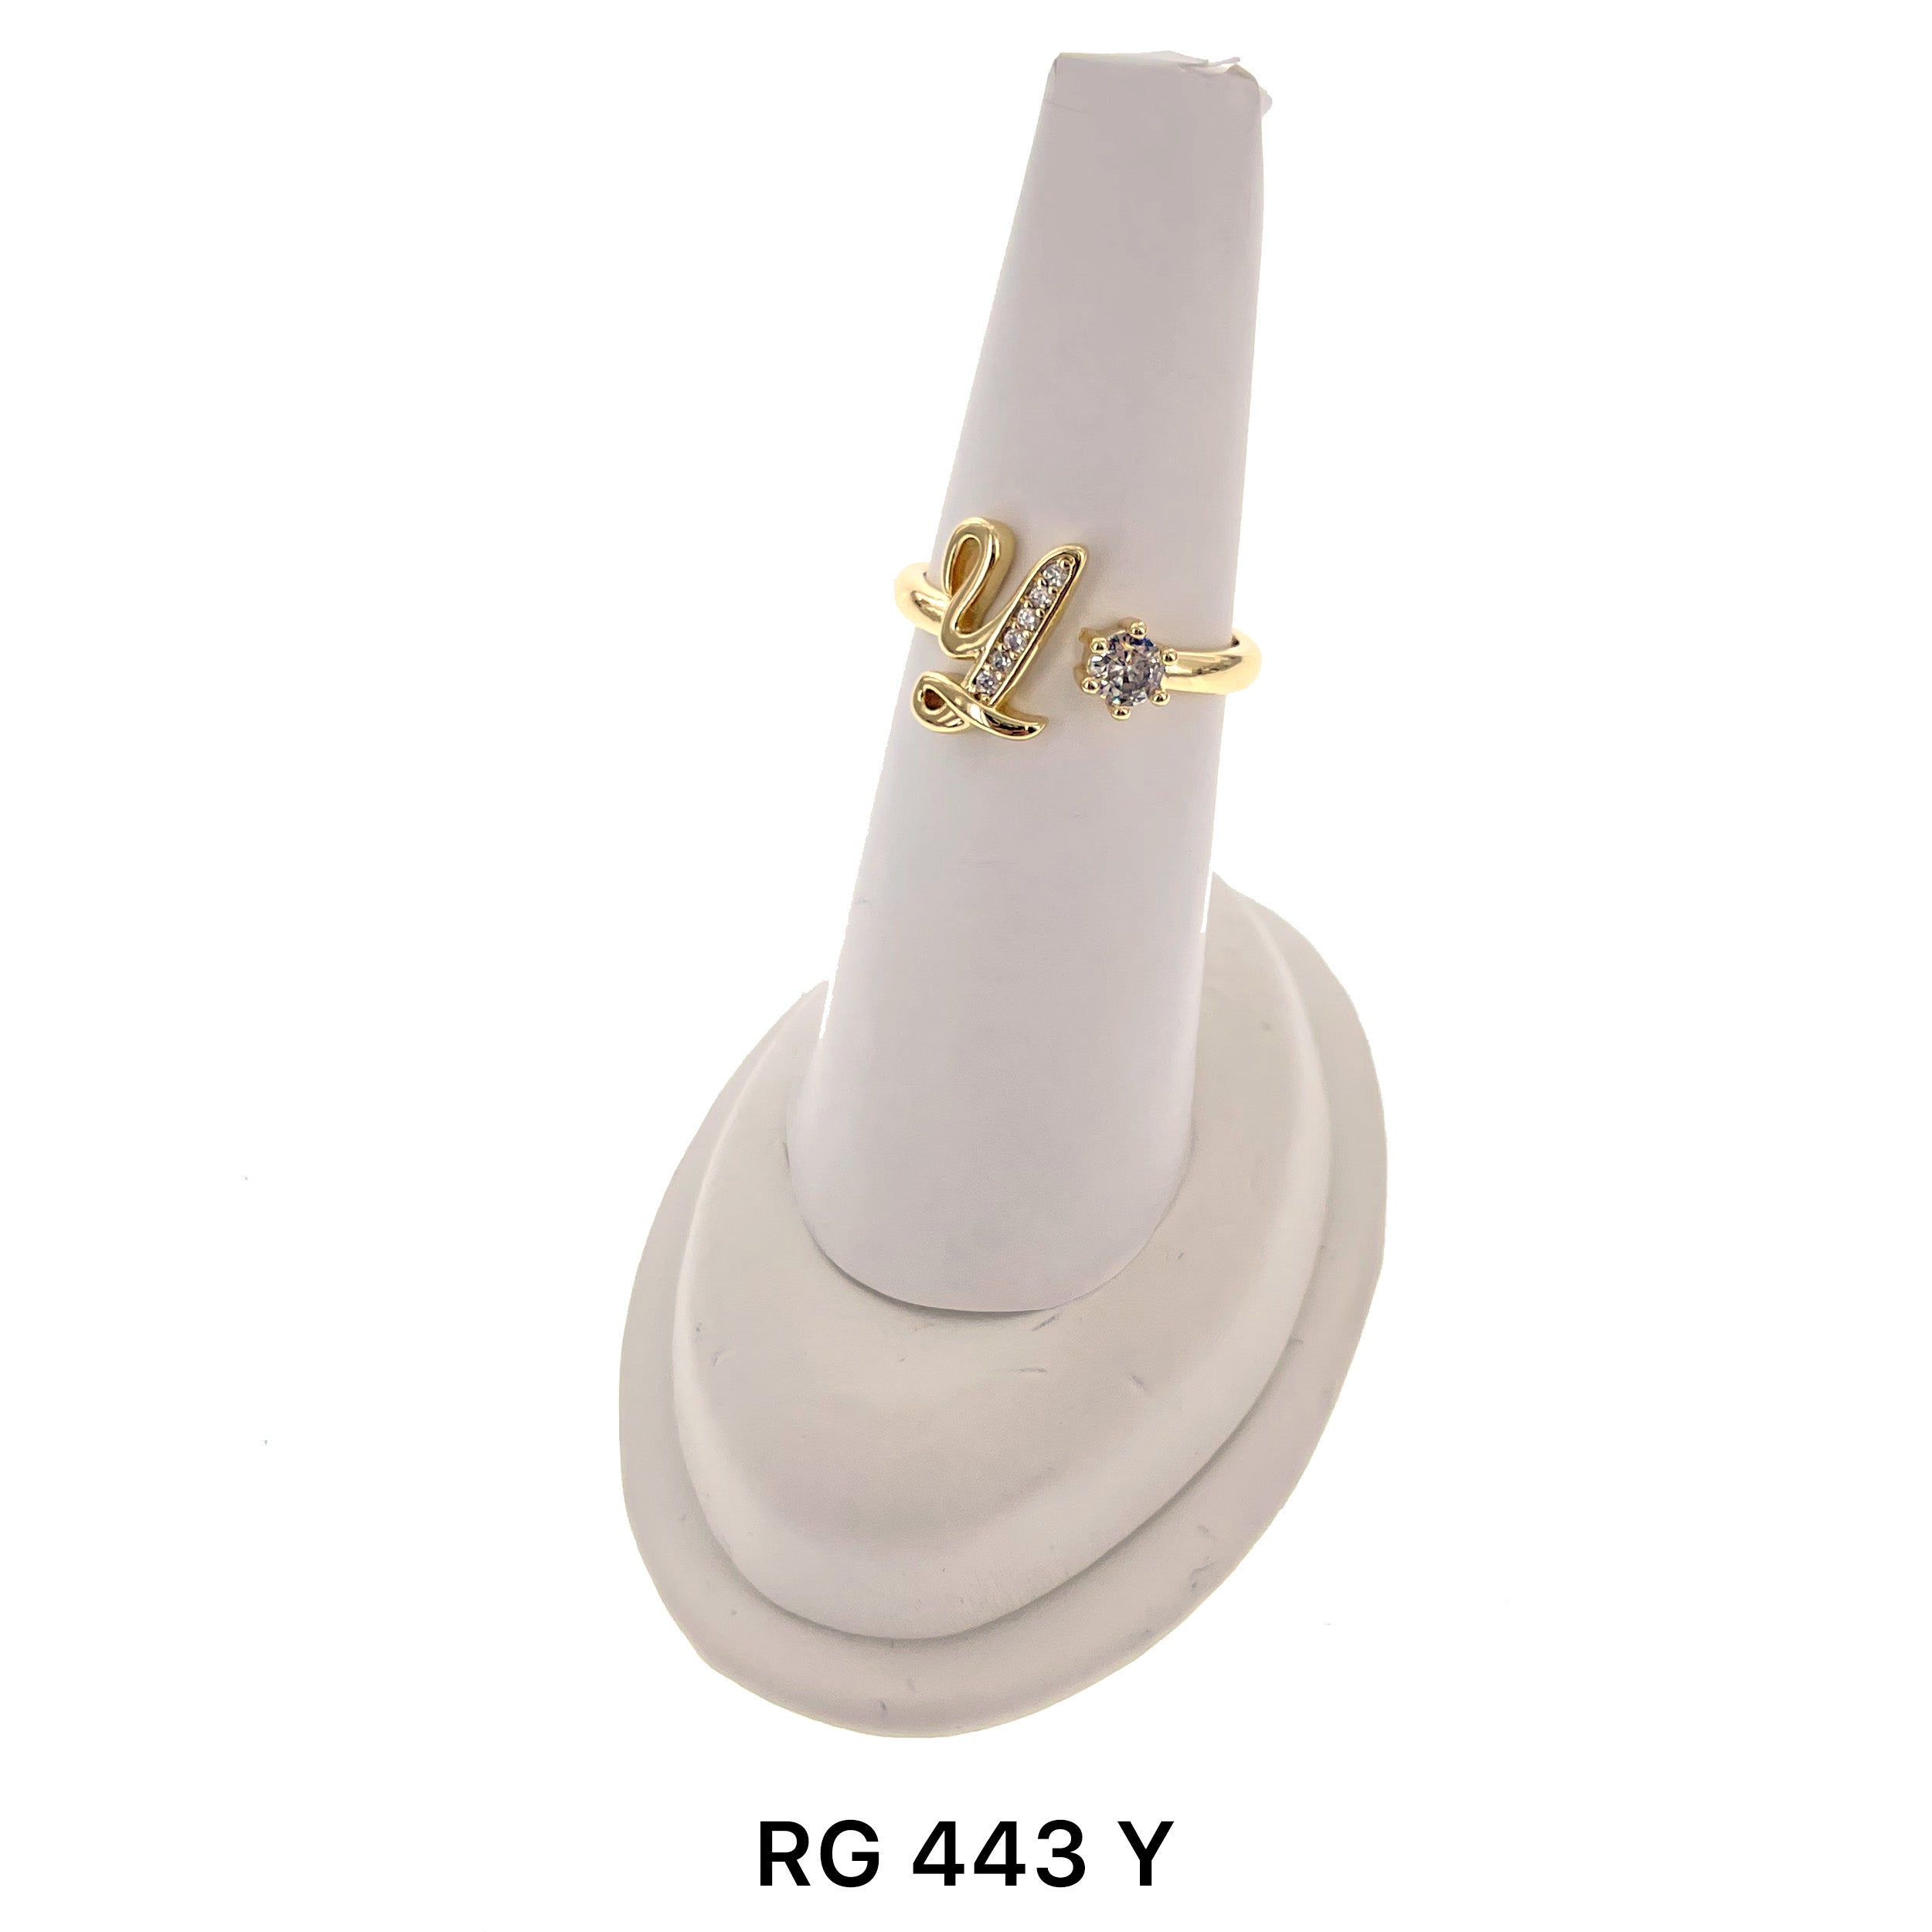 Initial Adjustable Ring RG 443 Y